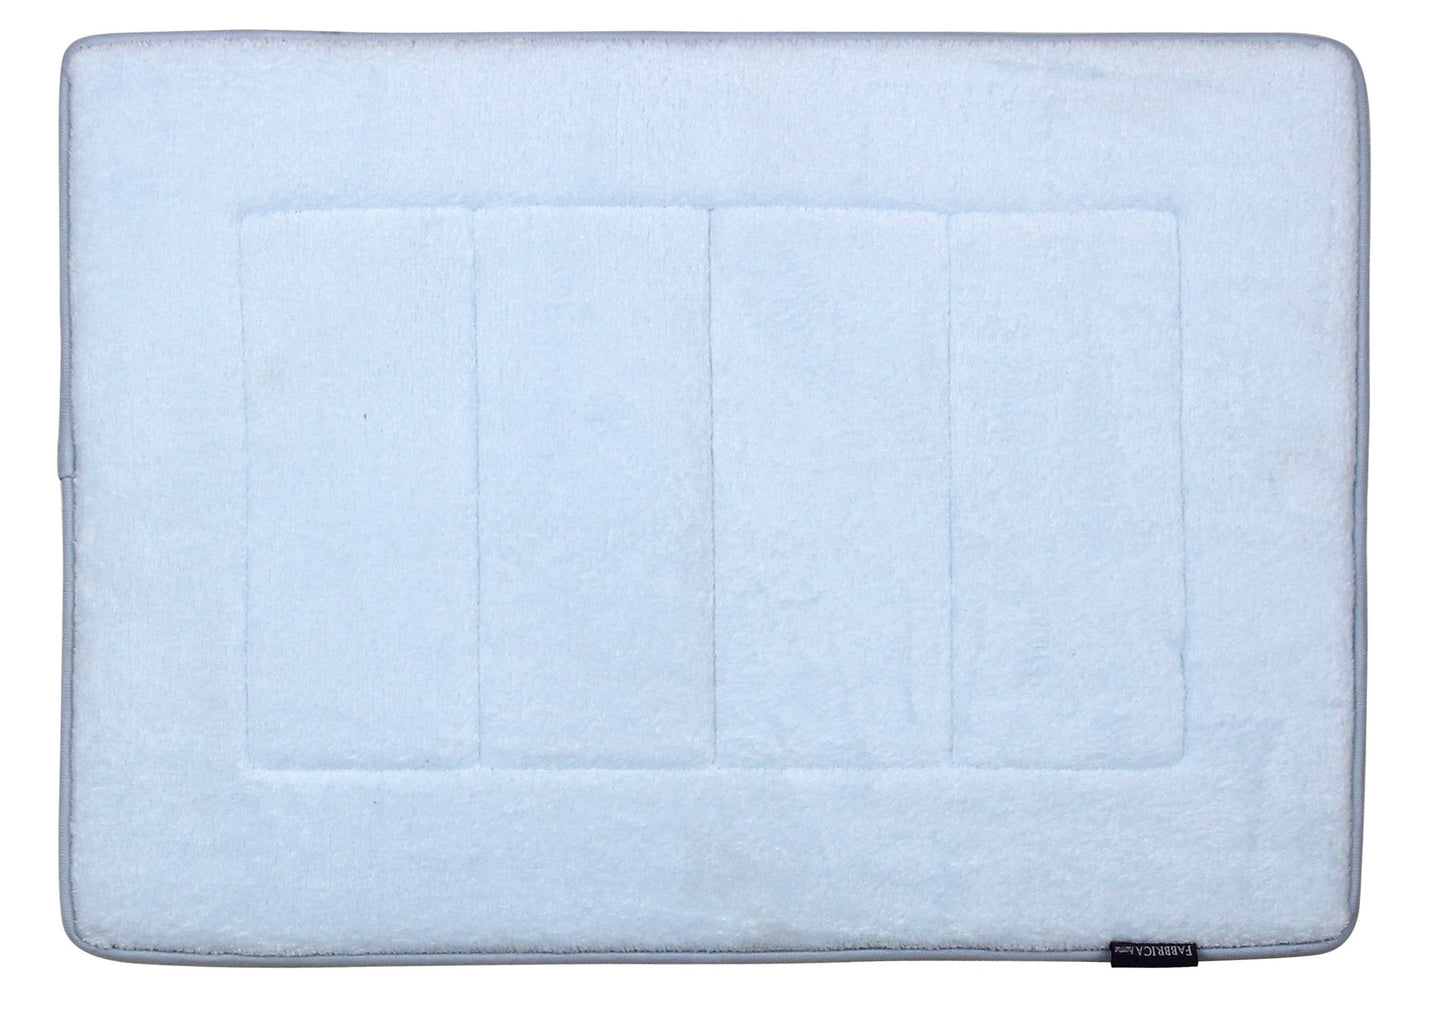 Memory Foam Bath Mat in Sky Blue, 17 x 24 in by The Everplush Company